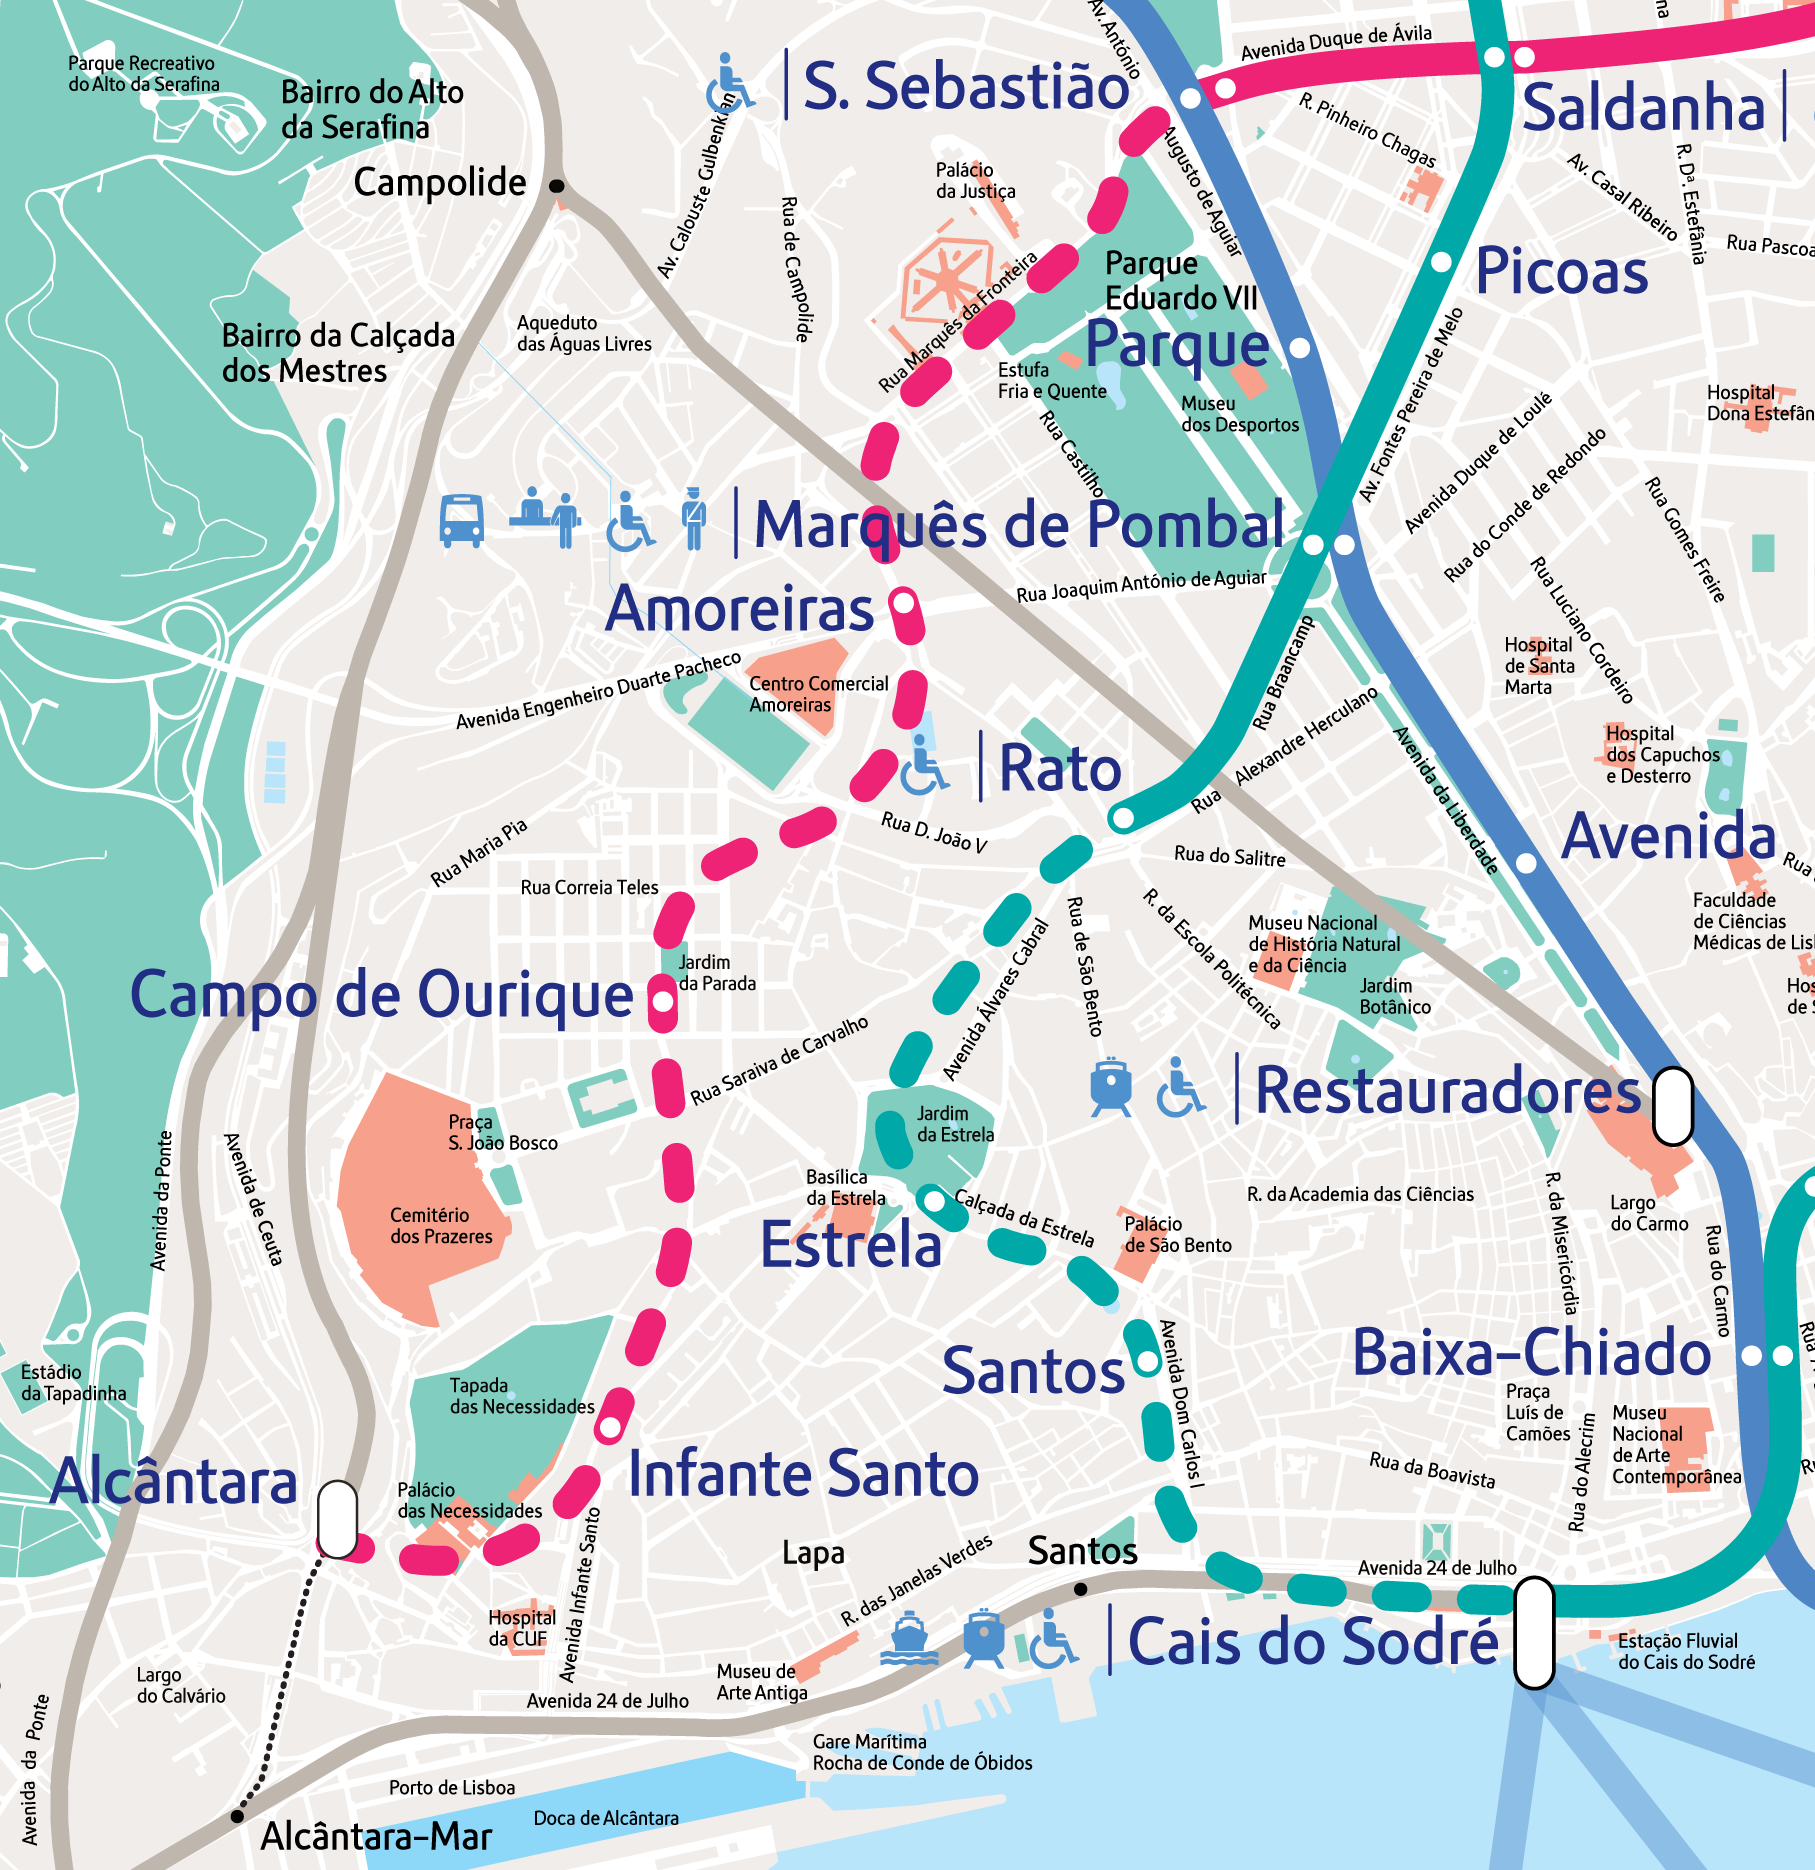 Mapa das expansões em curso e previstas do Metro